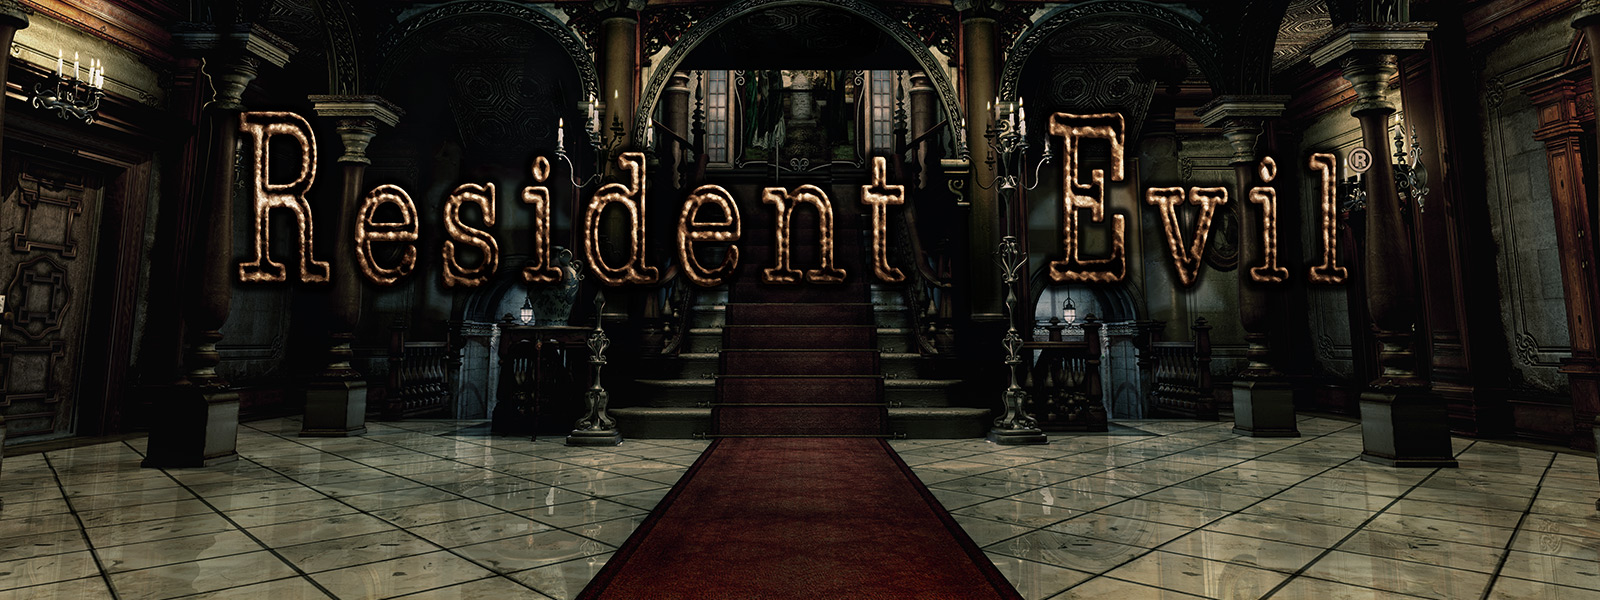 Resident Evil, scène d’un passage arqué avec des escaliers recouverts d’un tapis rouge